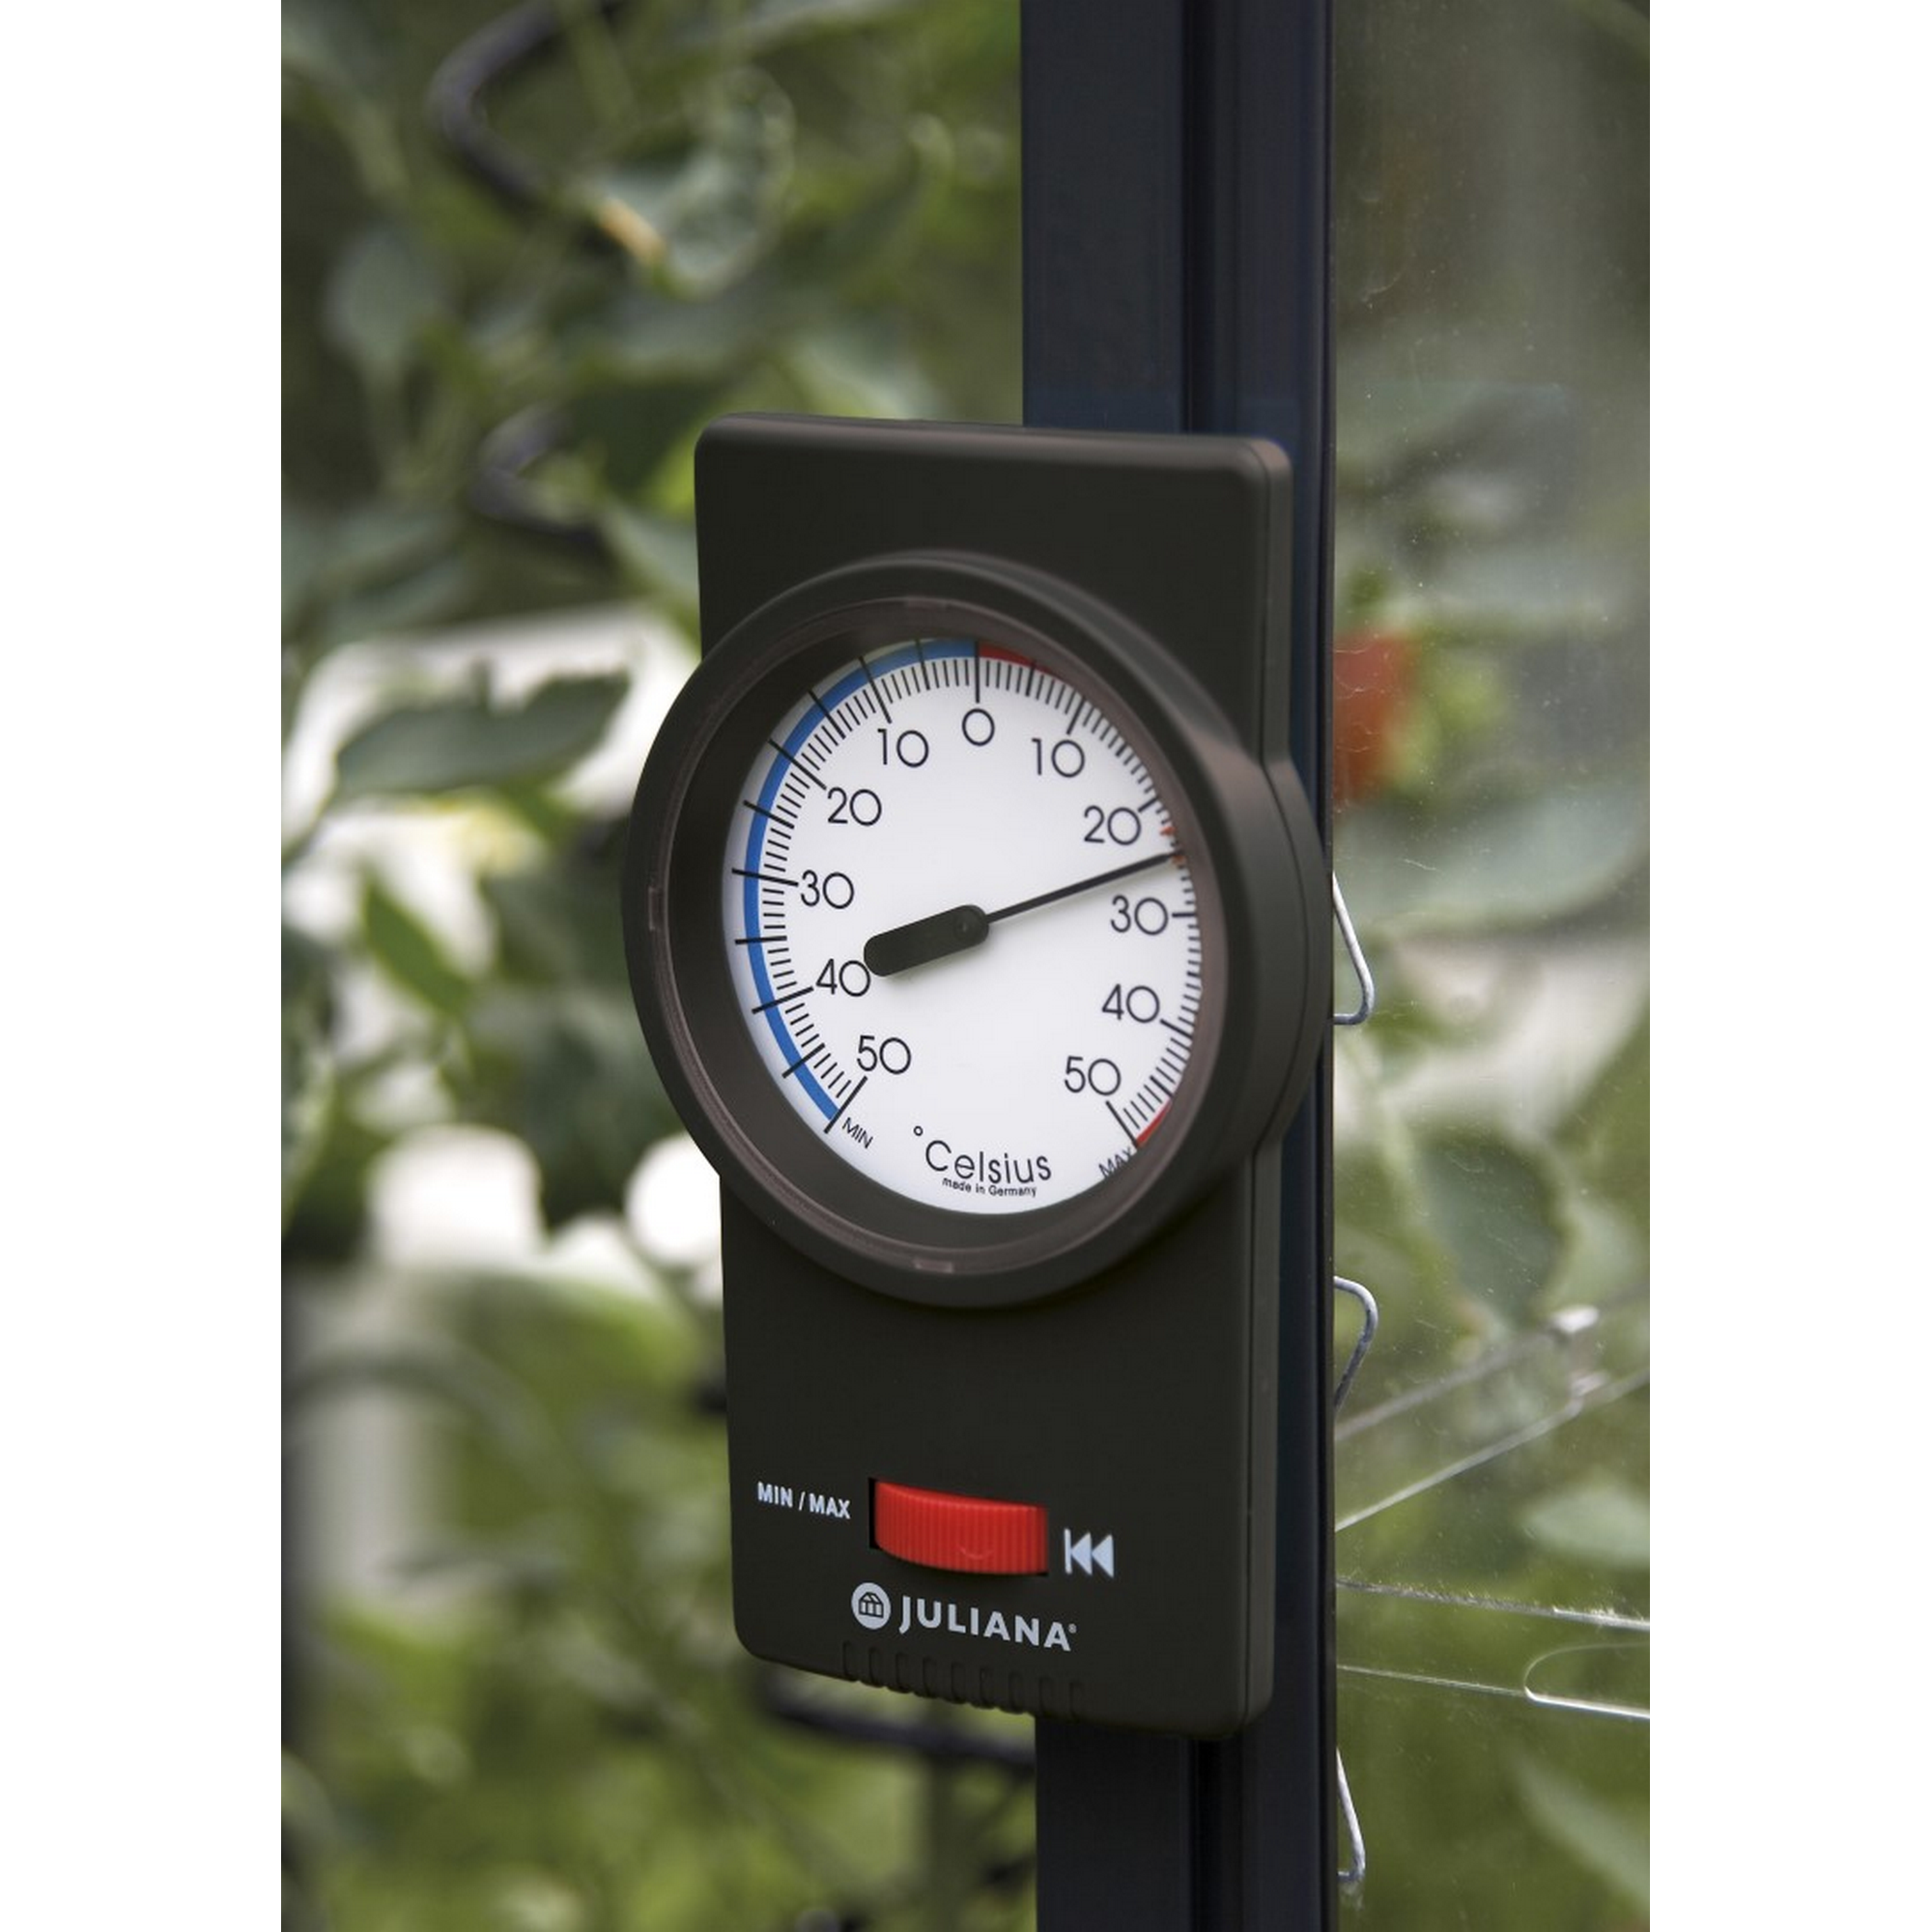 Min-Max-Thermometer für Gewächshäuser, analog, schwarz + product picture